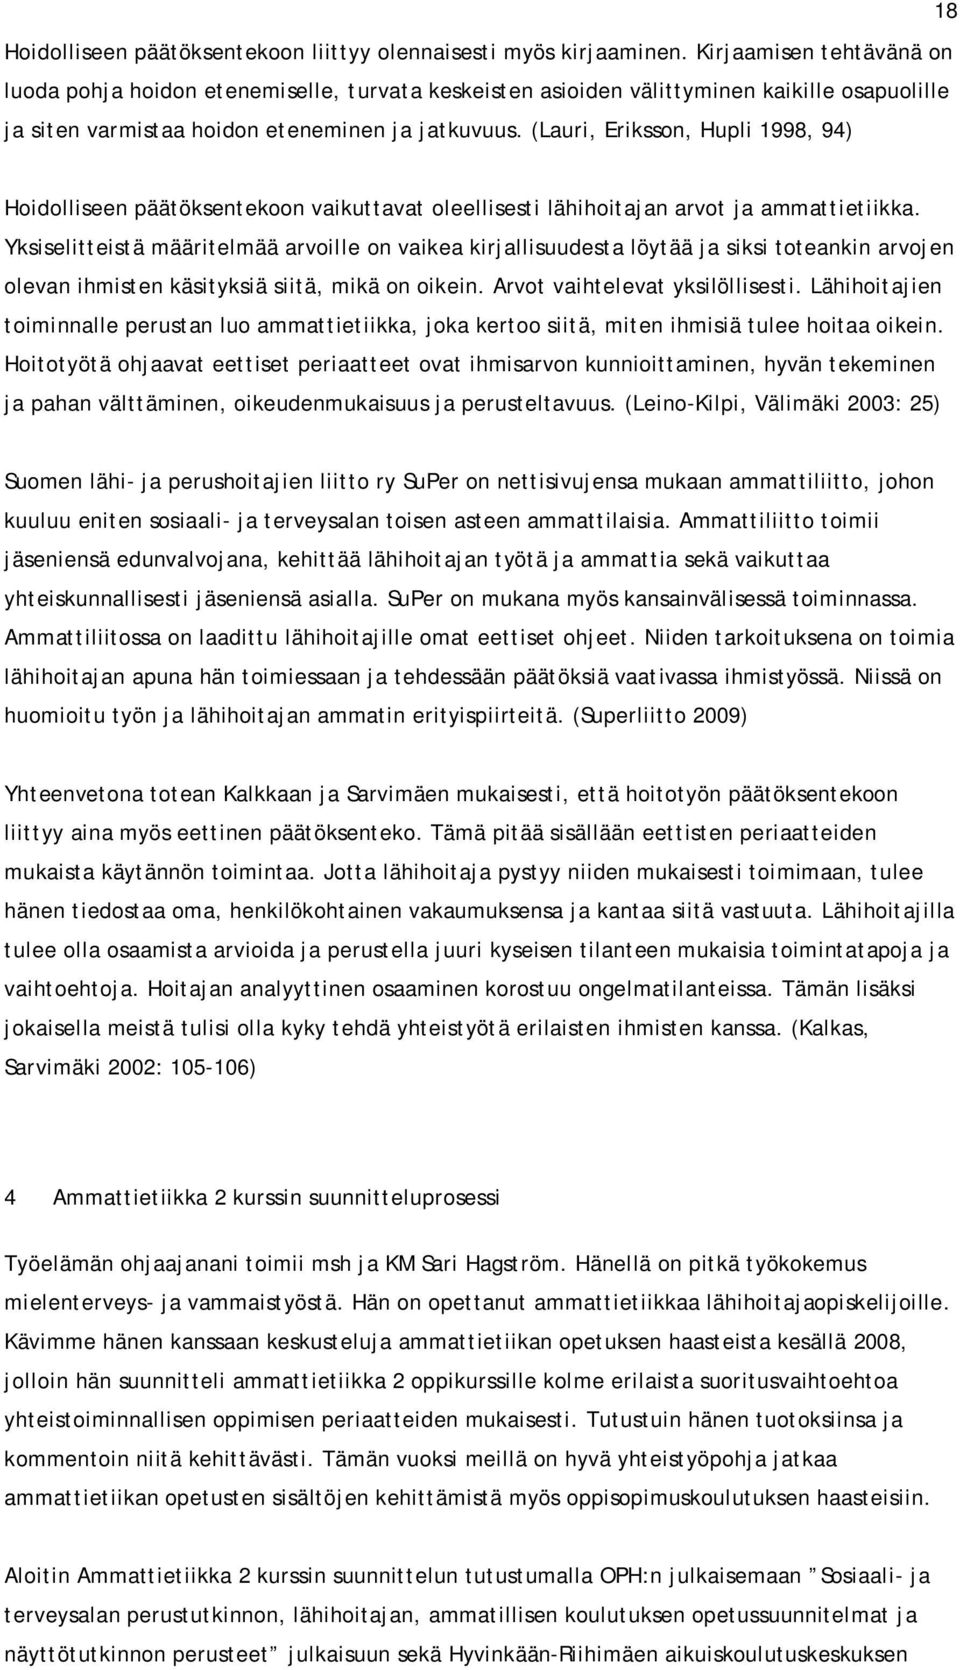 (Lauri, Eriksson, Hupli 1998, 94) Hoidolliseen päätöksentekoon vaikuttavat oleellisesti lähihoitajan arvot ja ammattietiikka.